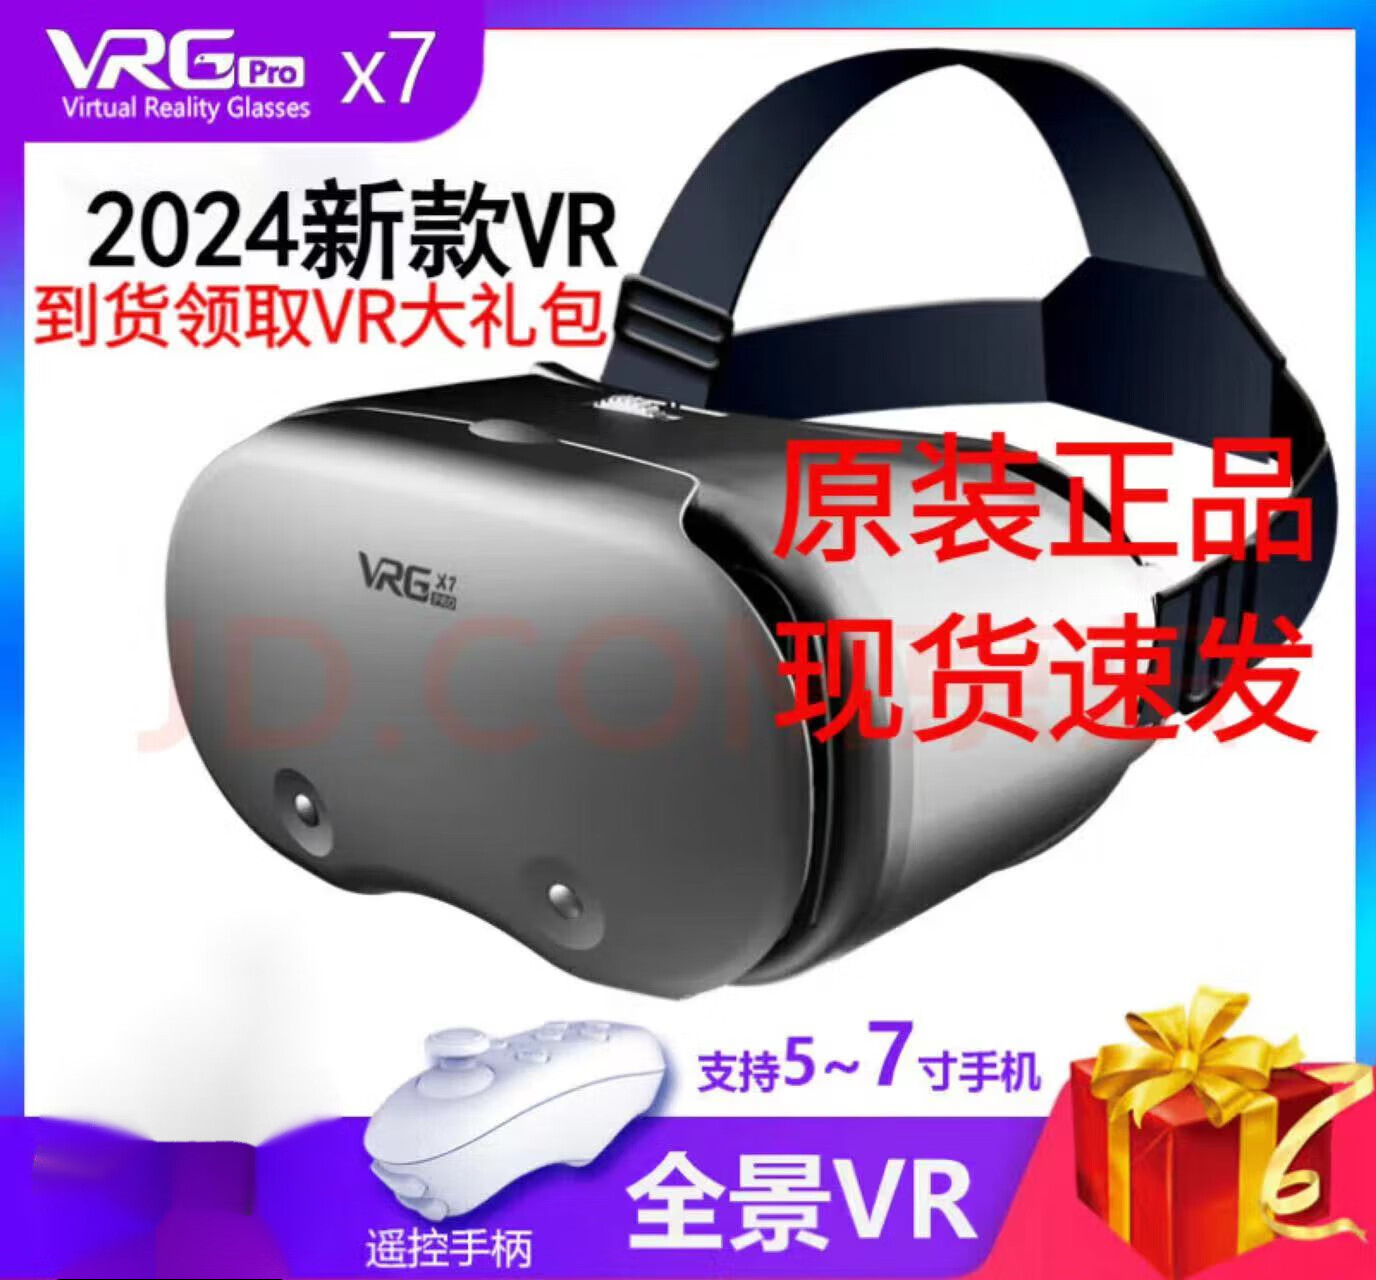 VRG全景vr眼镜智能虚拟现实家用大屏幕手机专用3D一体机体感游戏电影华hua为ar安卓ios专用vr眼镜 蓝光版VR眼镜+遥控白手柄